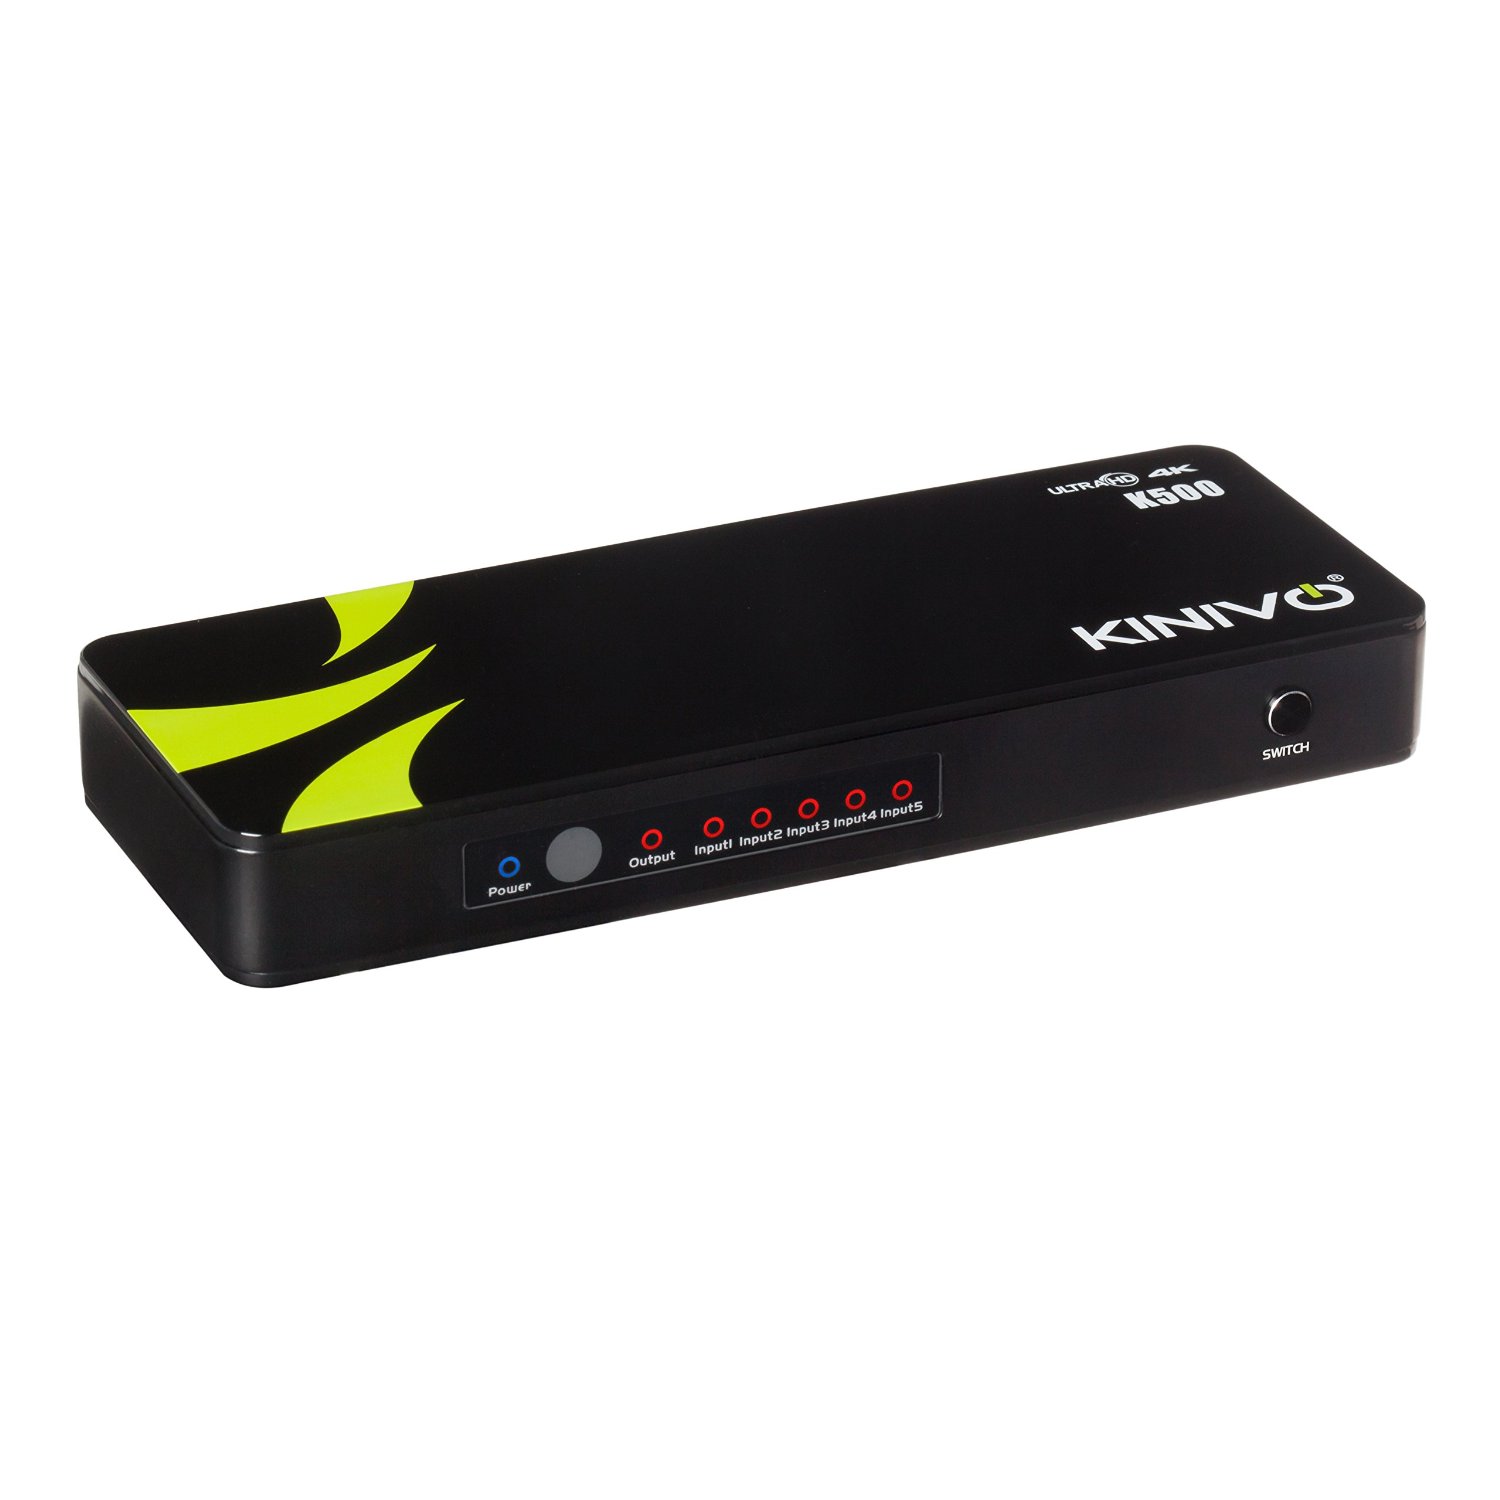 Review: Kinivo K500 Premium 5-Port High Speed 4K HDMI Switch with IR Wireless Remote